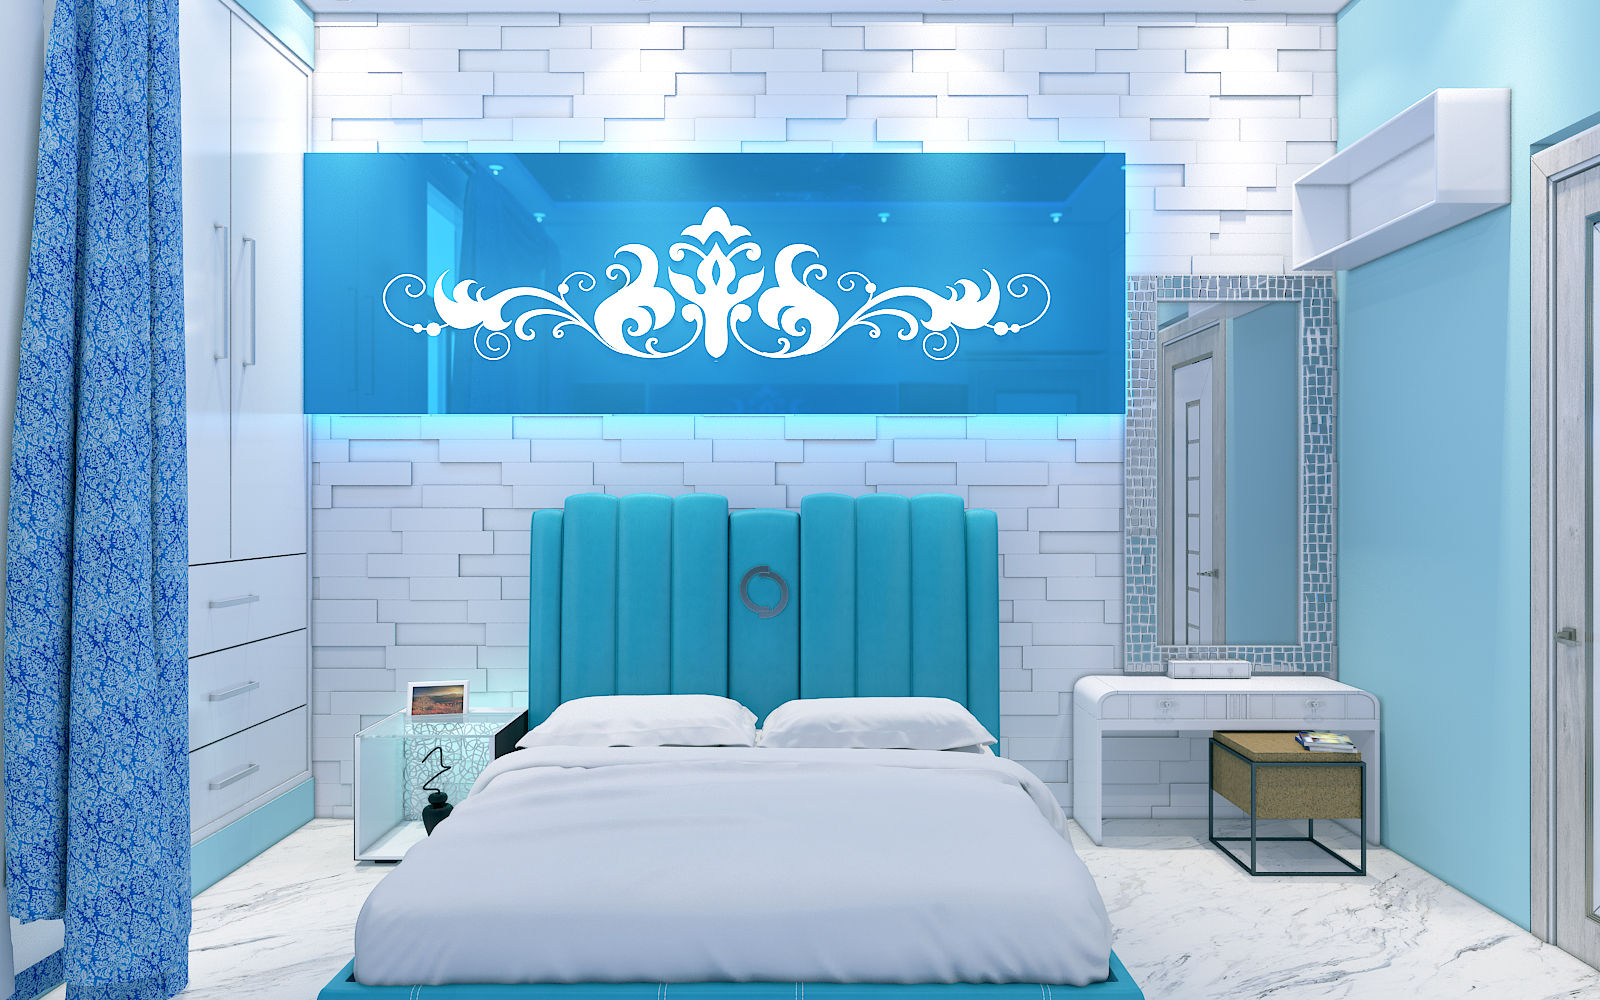 Aqua Bedroom 3D Design 2 Yagotimber.com Bedroom Accessories & decoration